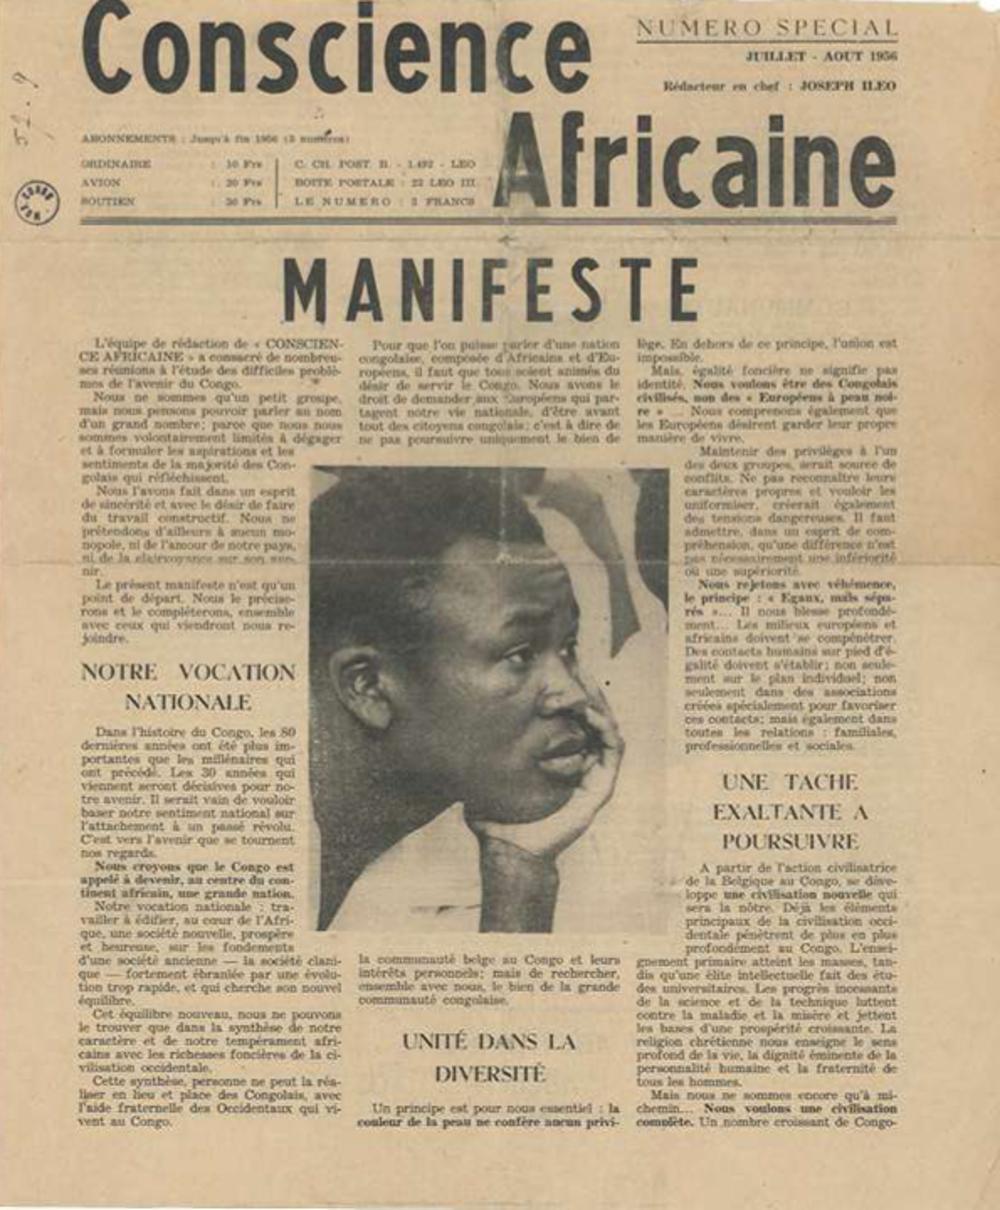 'Manifeste' verscheen in juli 1956 in een speciale uitgave van 'Conscience Africaine'.